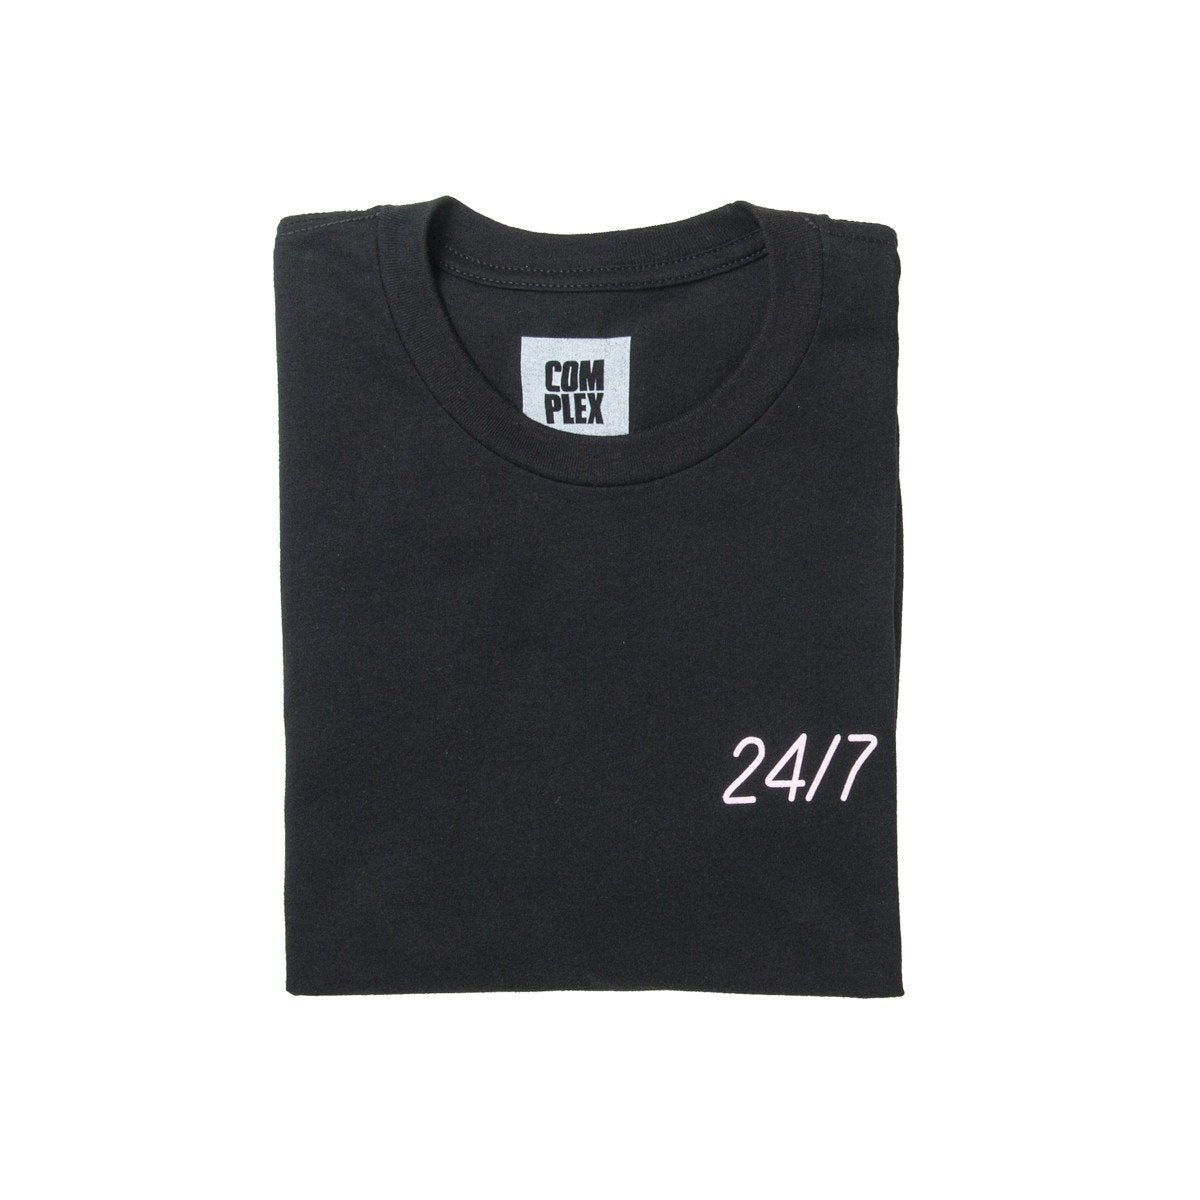 24/7 T-Shirt